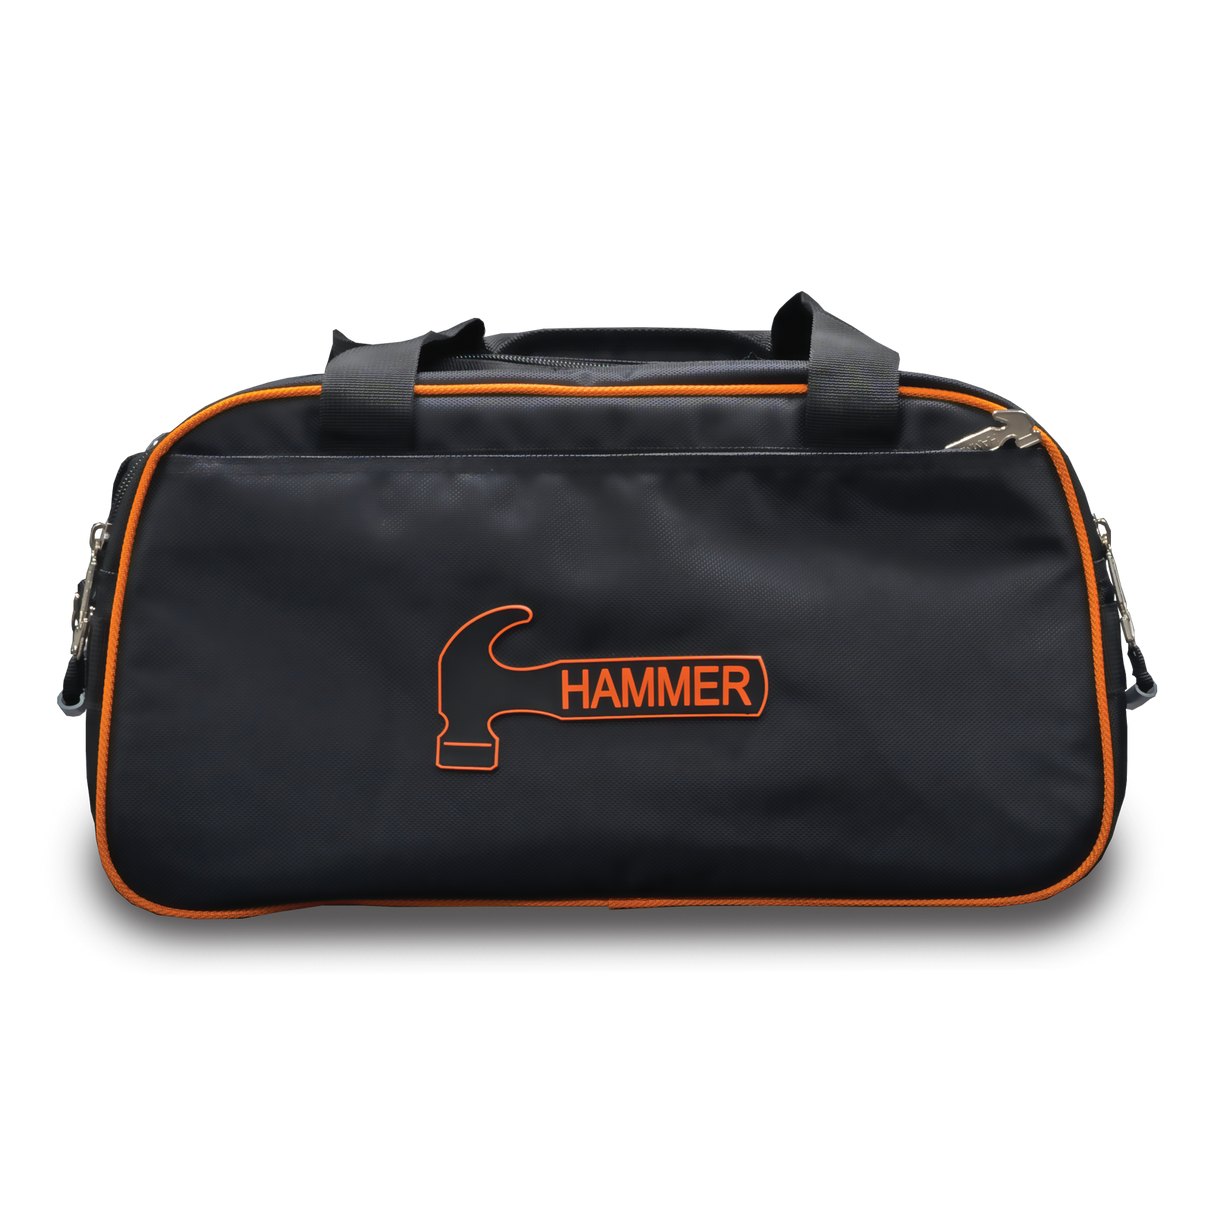 Hammer Premium Orange Black Double Tote 2 Ball Bowling Bag suitcase league tournament play sale discount coupon online pba tour